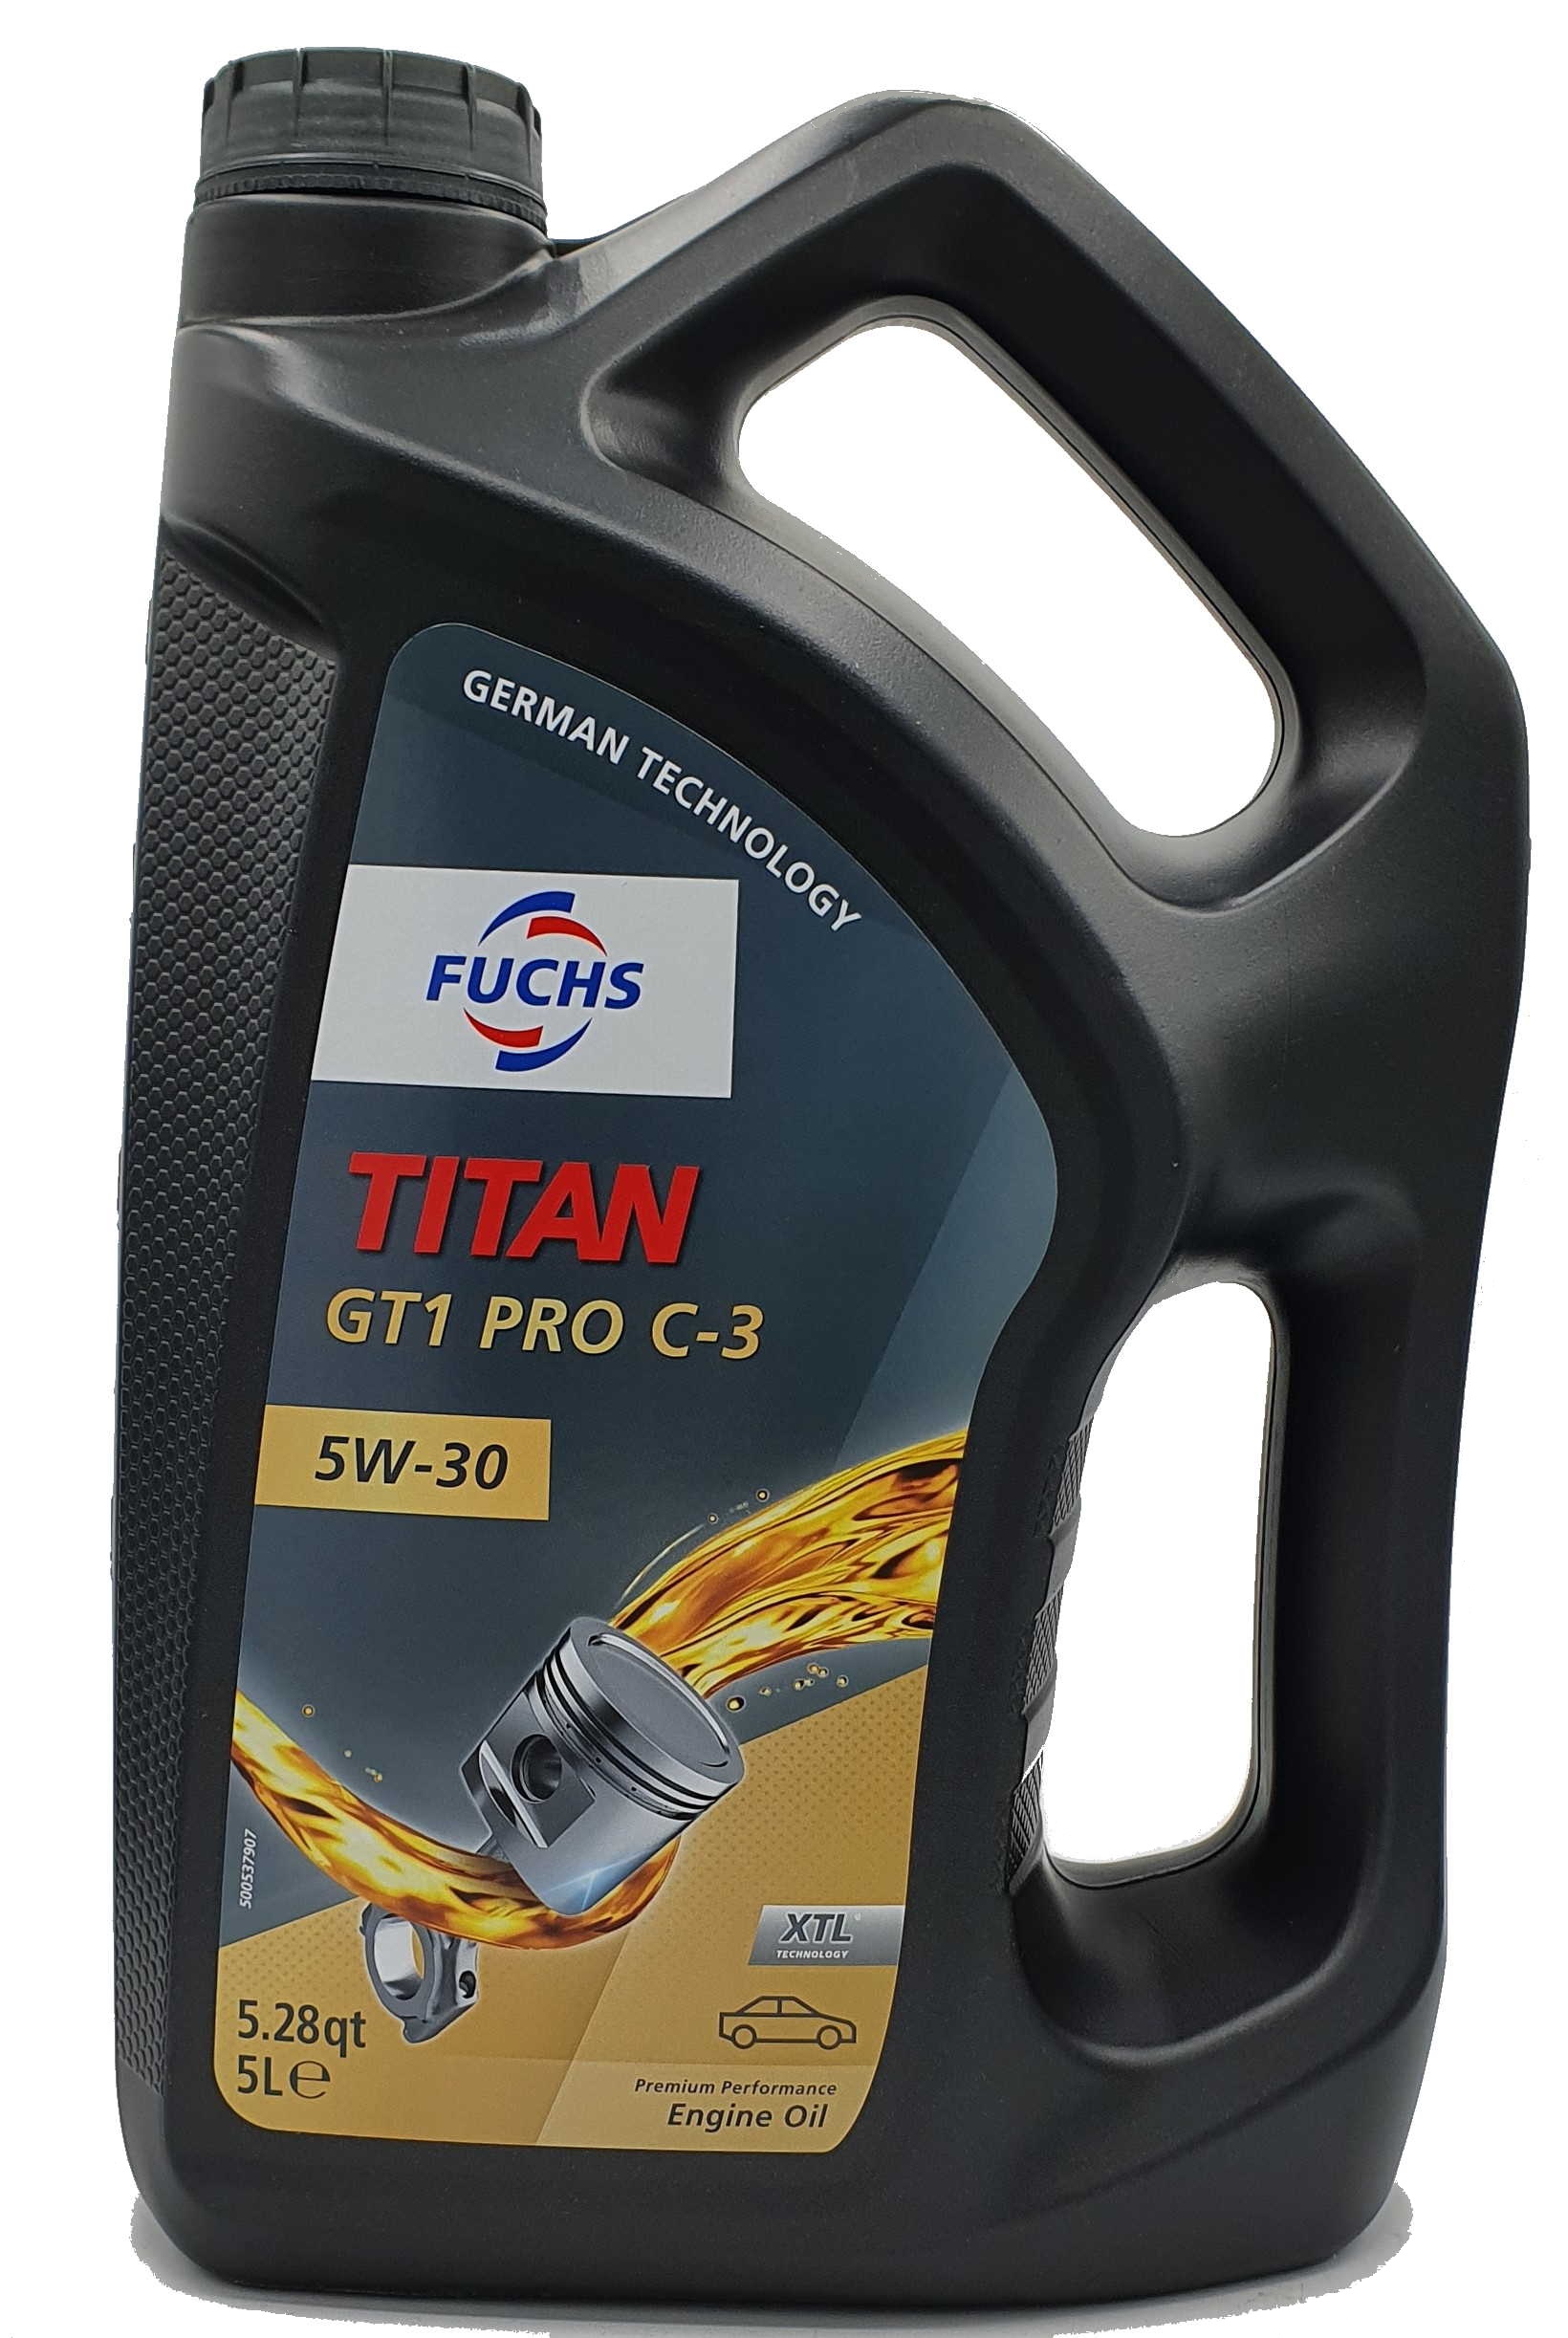 Fuchs Titan GT1 Pro C-3 5W-30 5 Liter